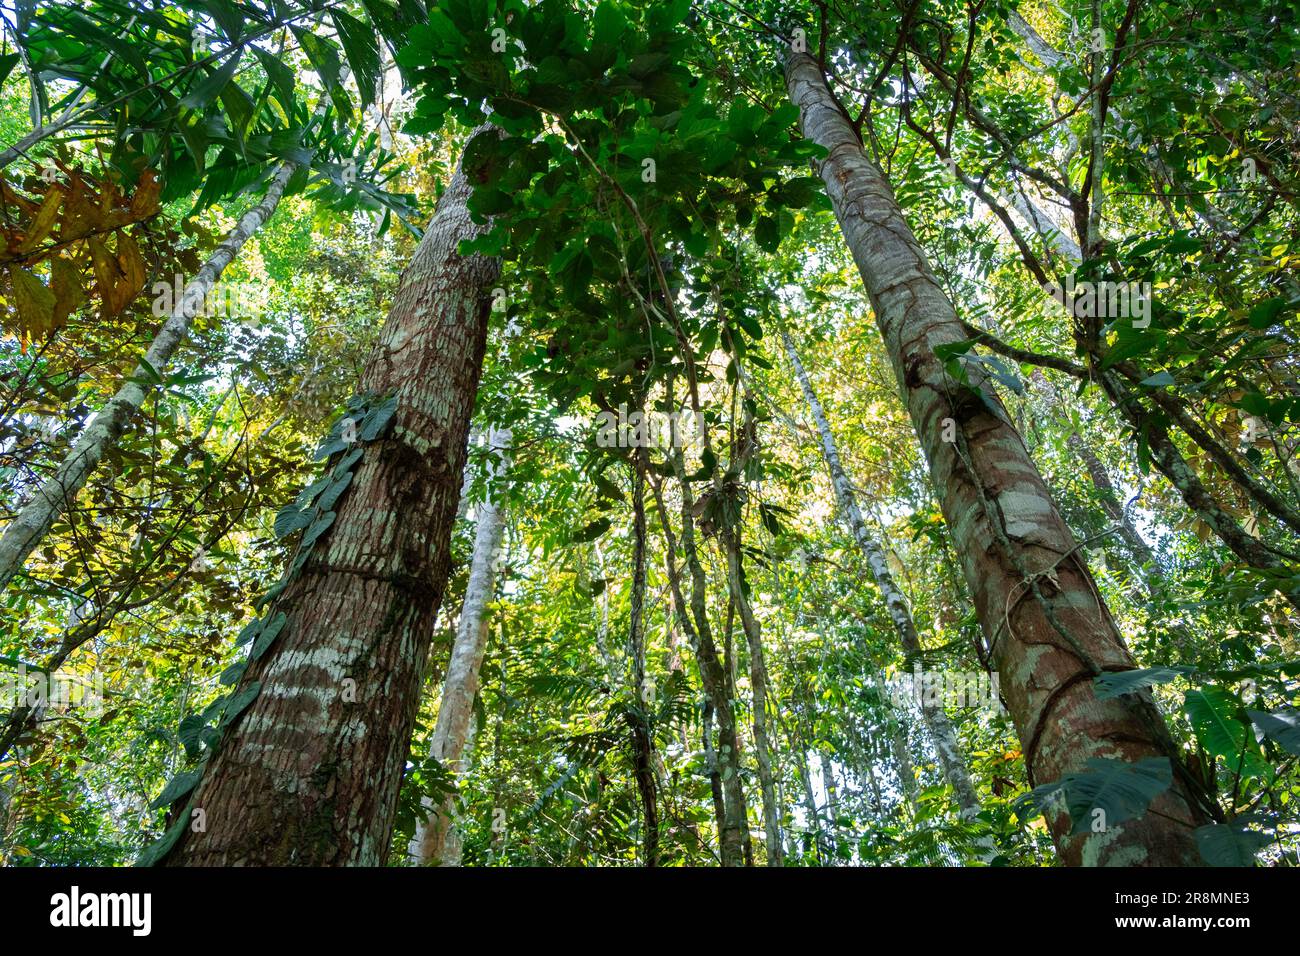 Photo horizontale regardant le ciel d'une forêt primaire dense dans la jungle de la forêt amazonienne équatorienne, Tena, Amérique latine. Flore, écosystème Banque D'Images